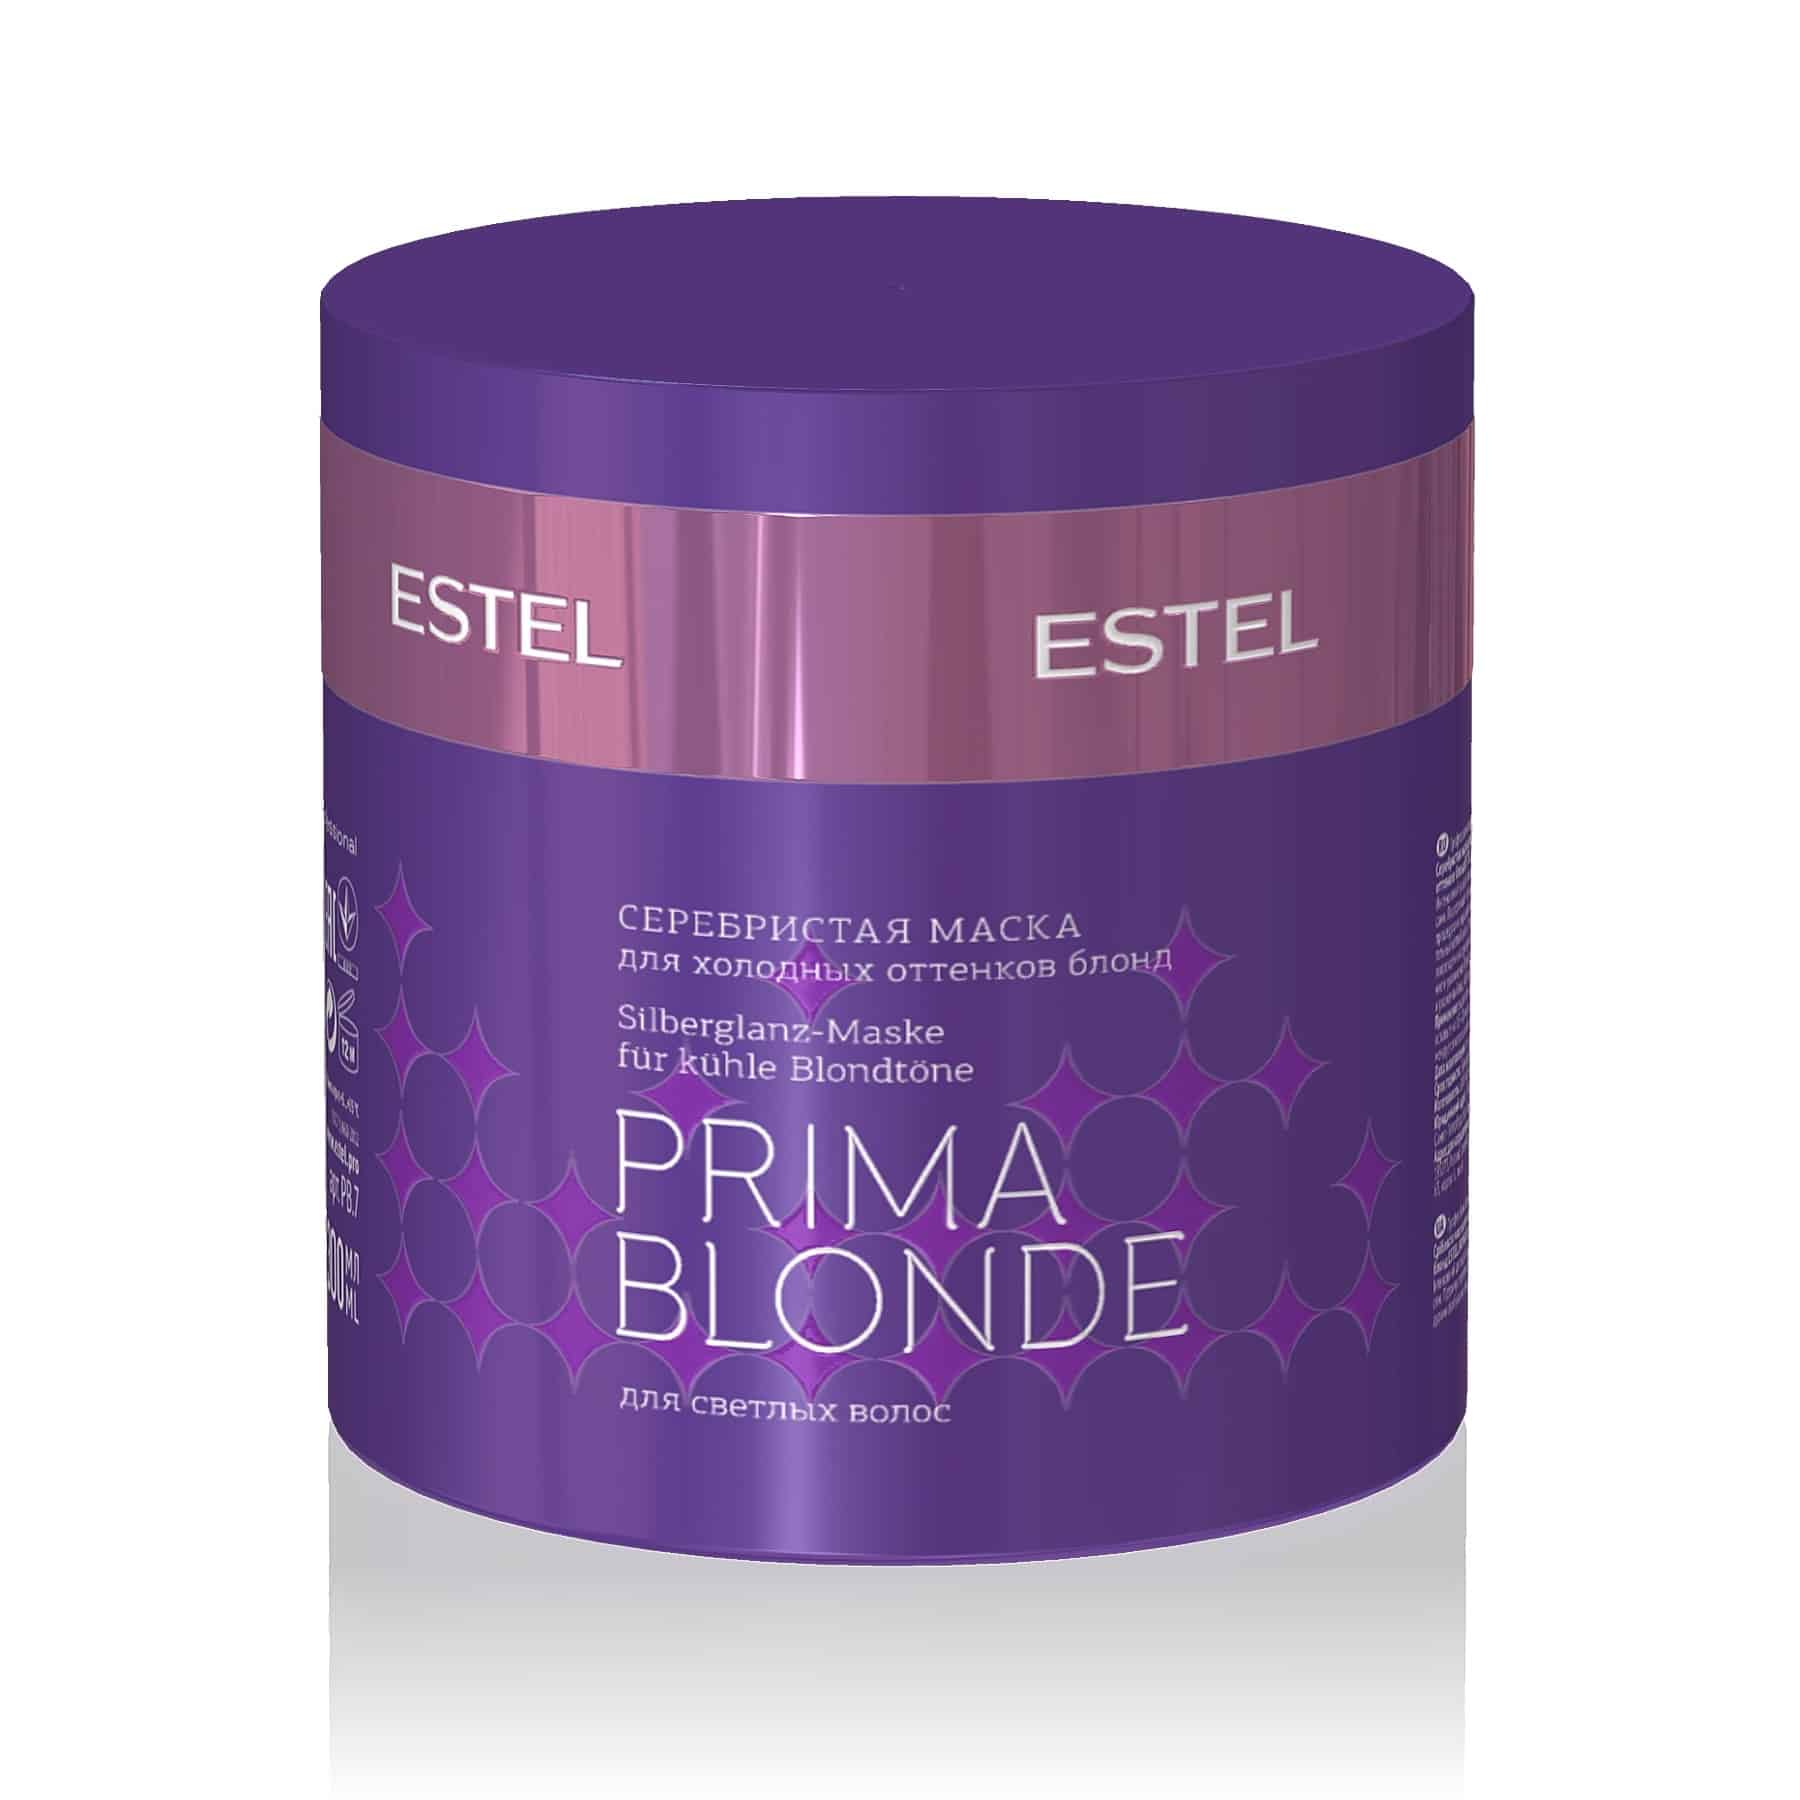 PRIMA BLONDE Silberglanz-Maske für kühle Blondtöne von ESTEL 60ml